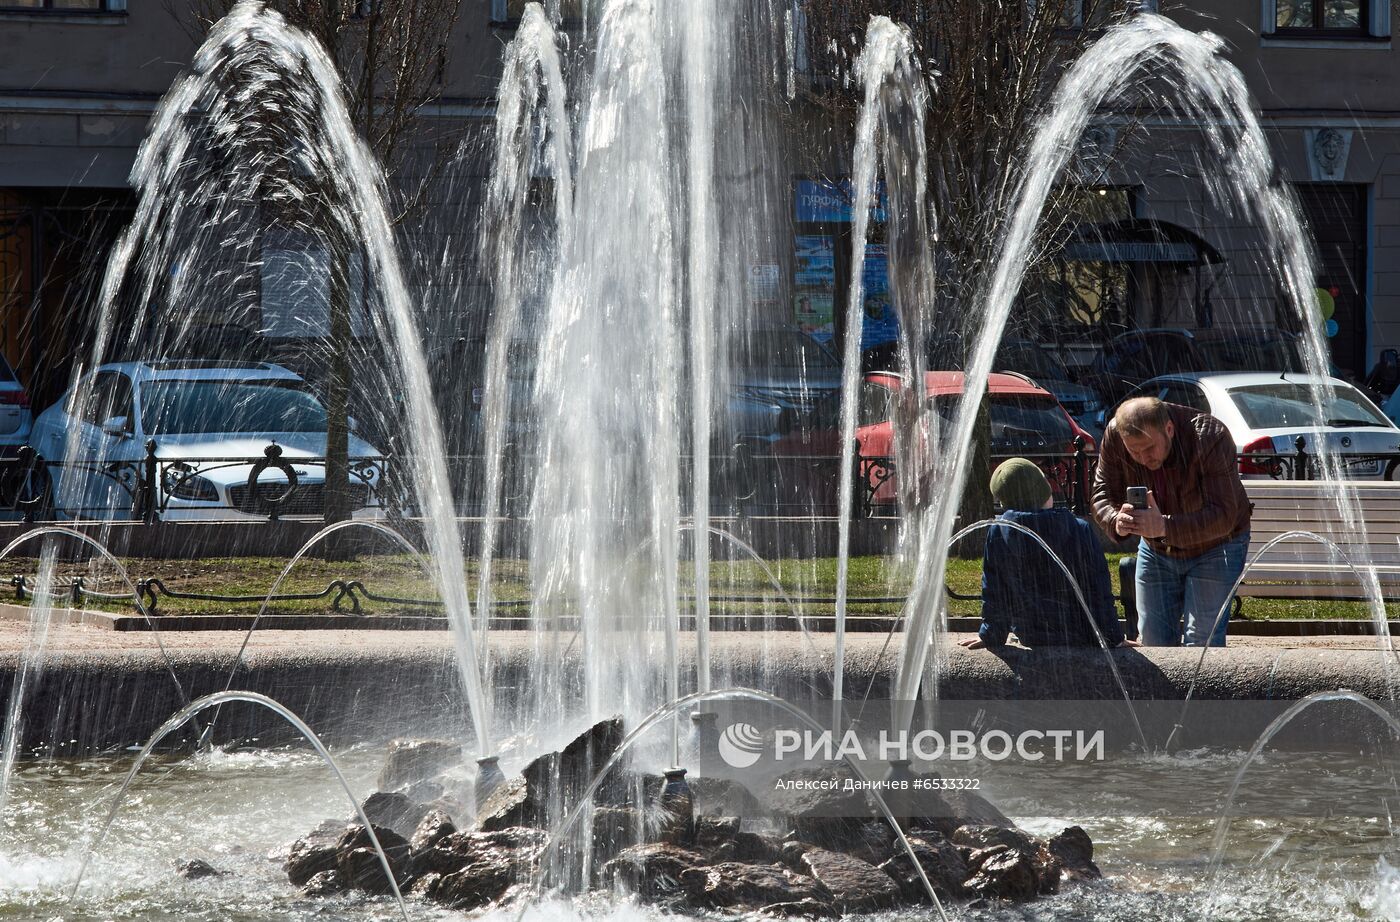 Открытие сезона фонтанов в Санкт-Петербурге